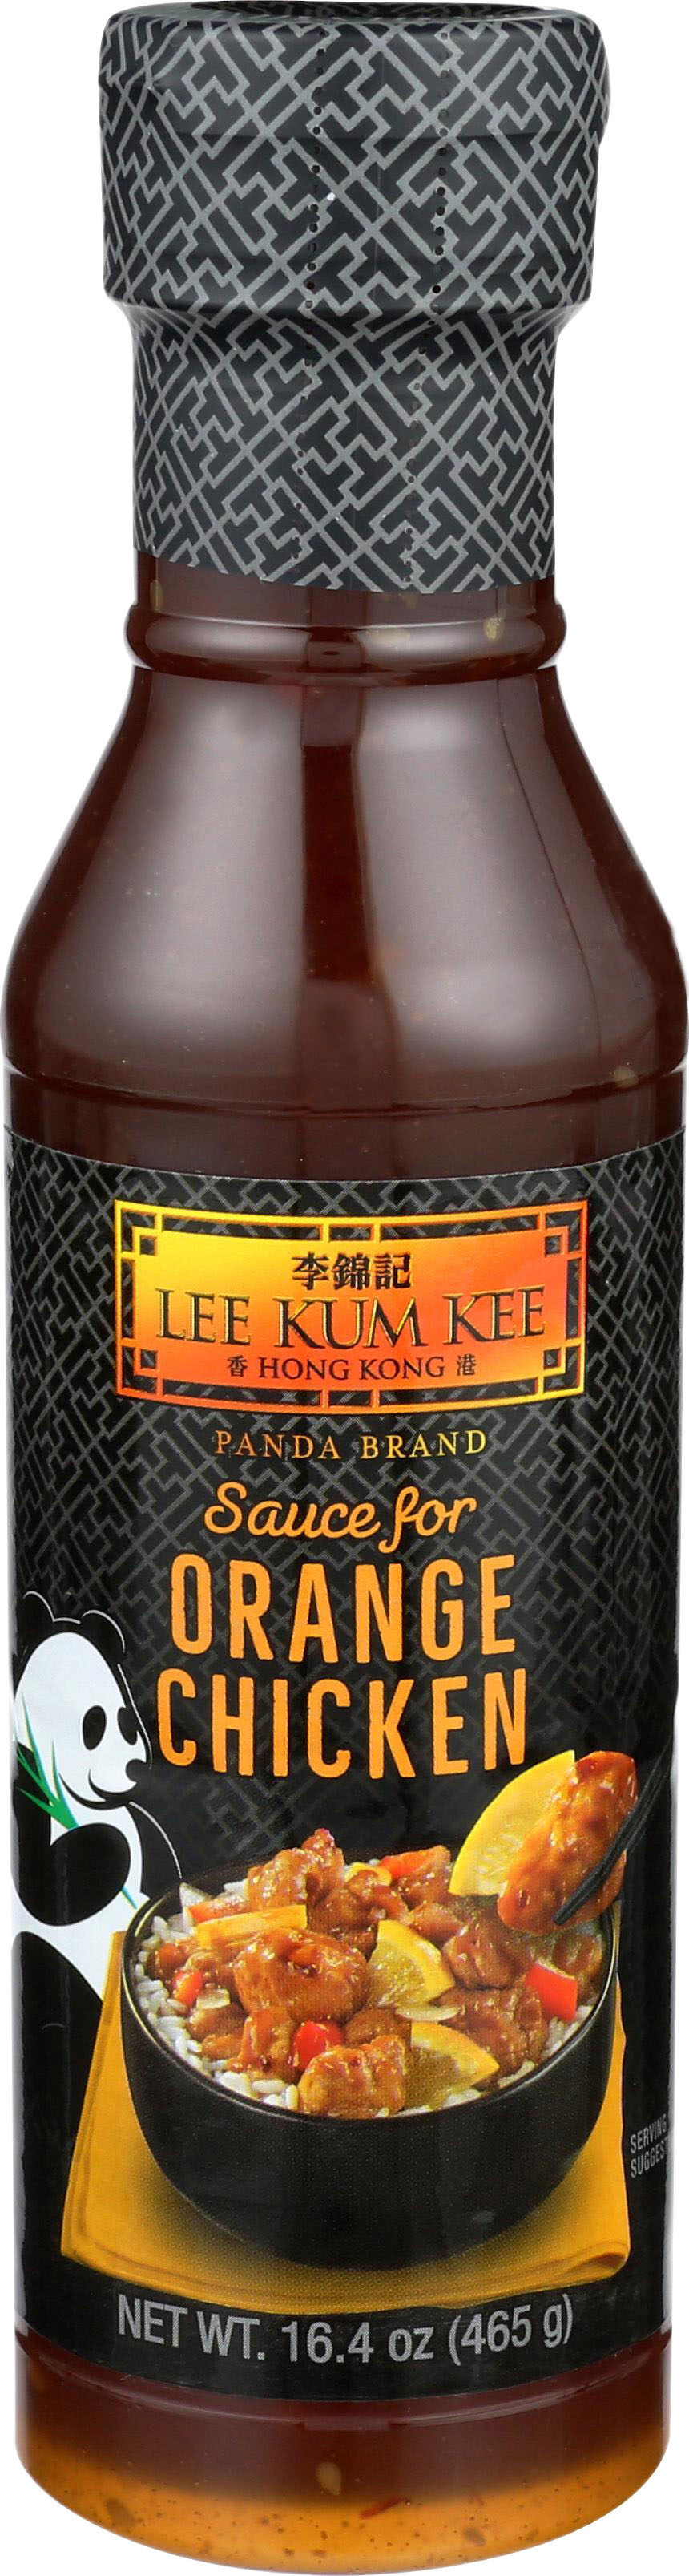 Orange Chicken Sauce